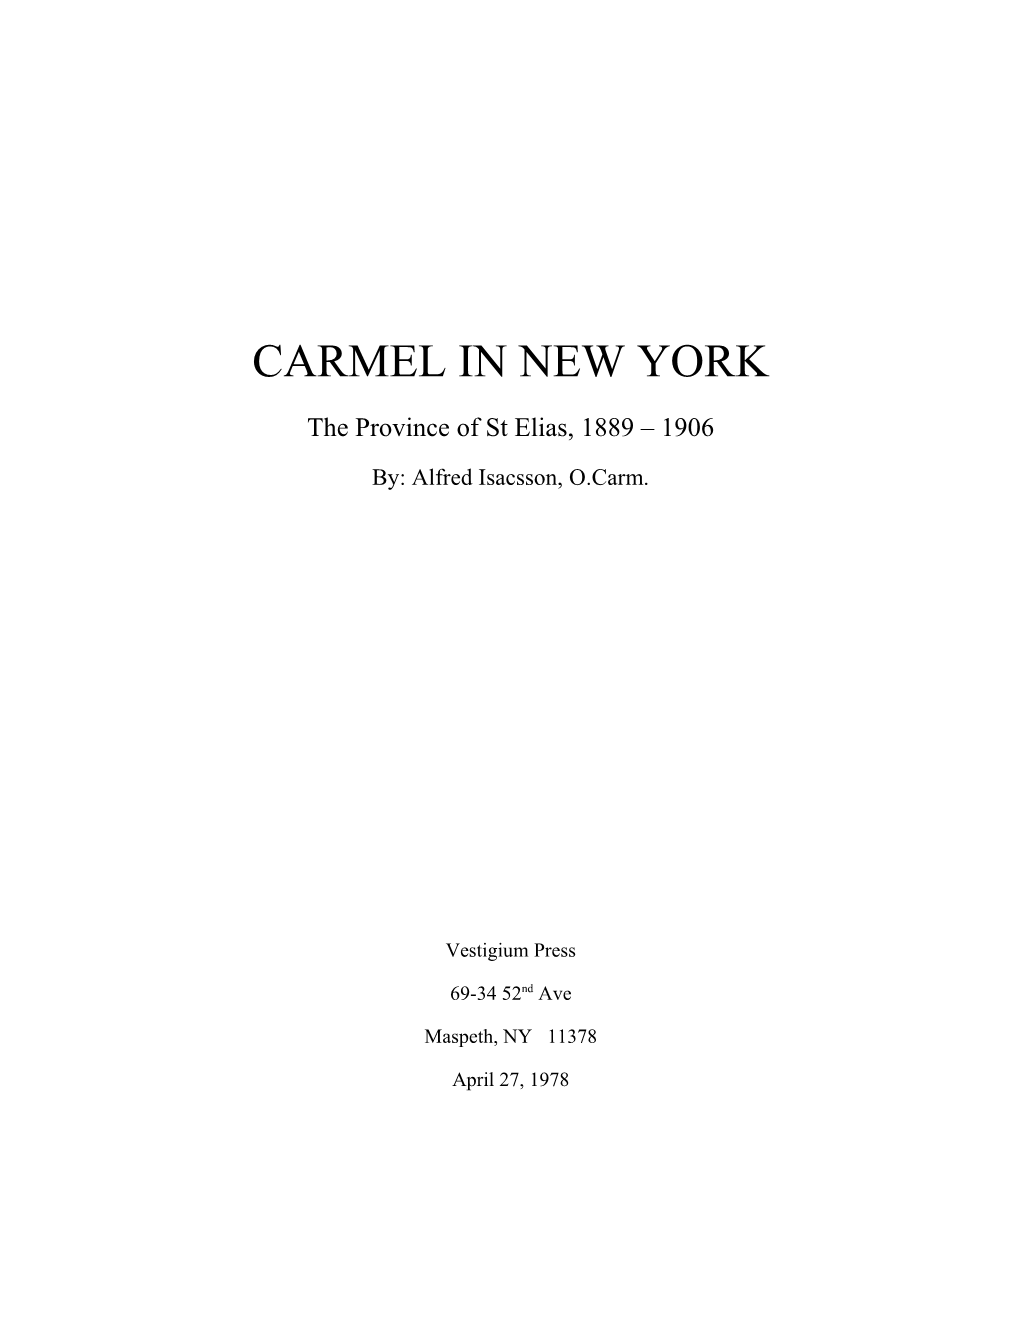 Carmel in New York